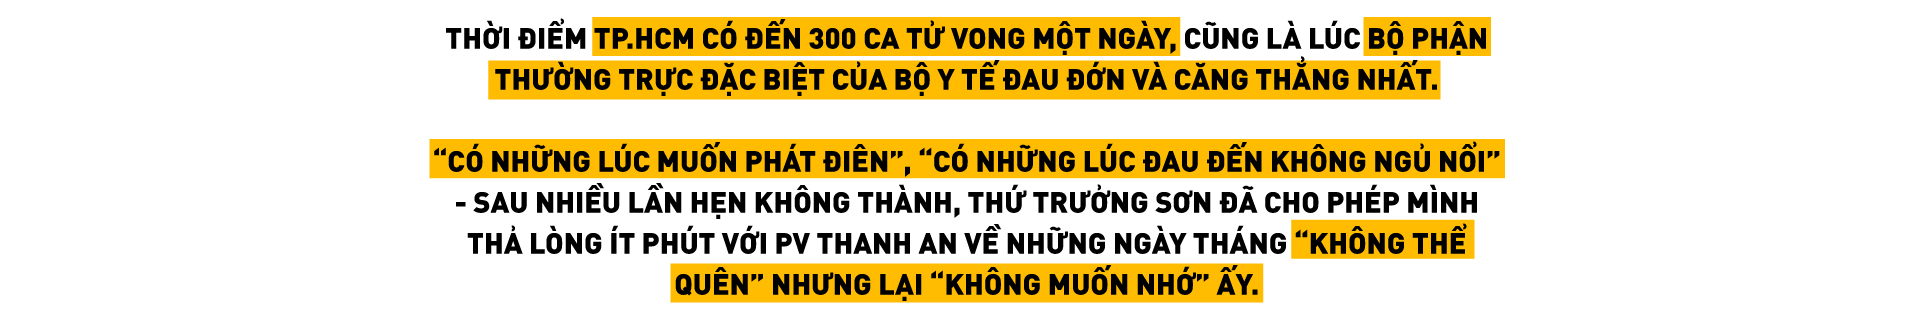 Thứ trưởng Bộ Y tế Nguyễn Trường Sơn: “Có lúc cả bộ phận thường trực ngồi khóc với nhau - Ảnh 1.